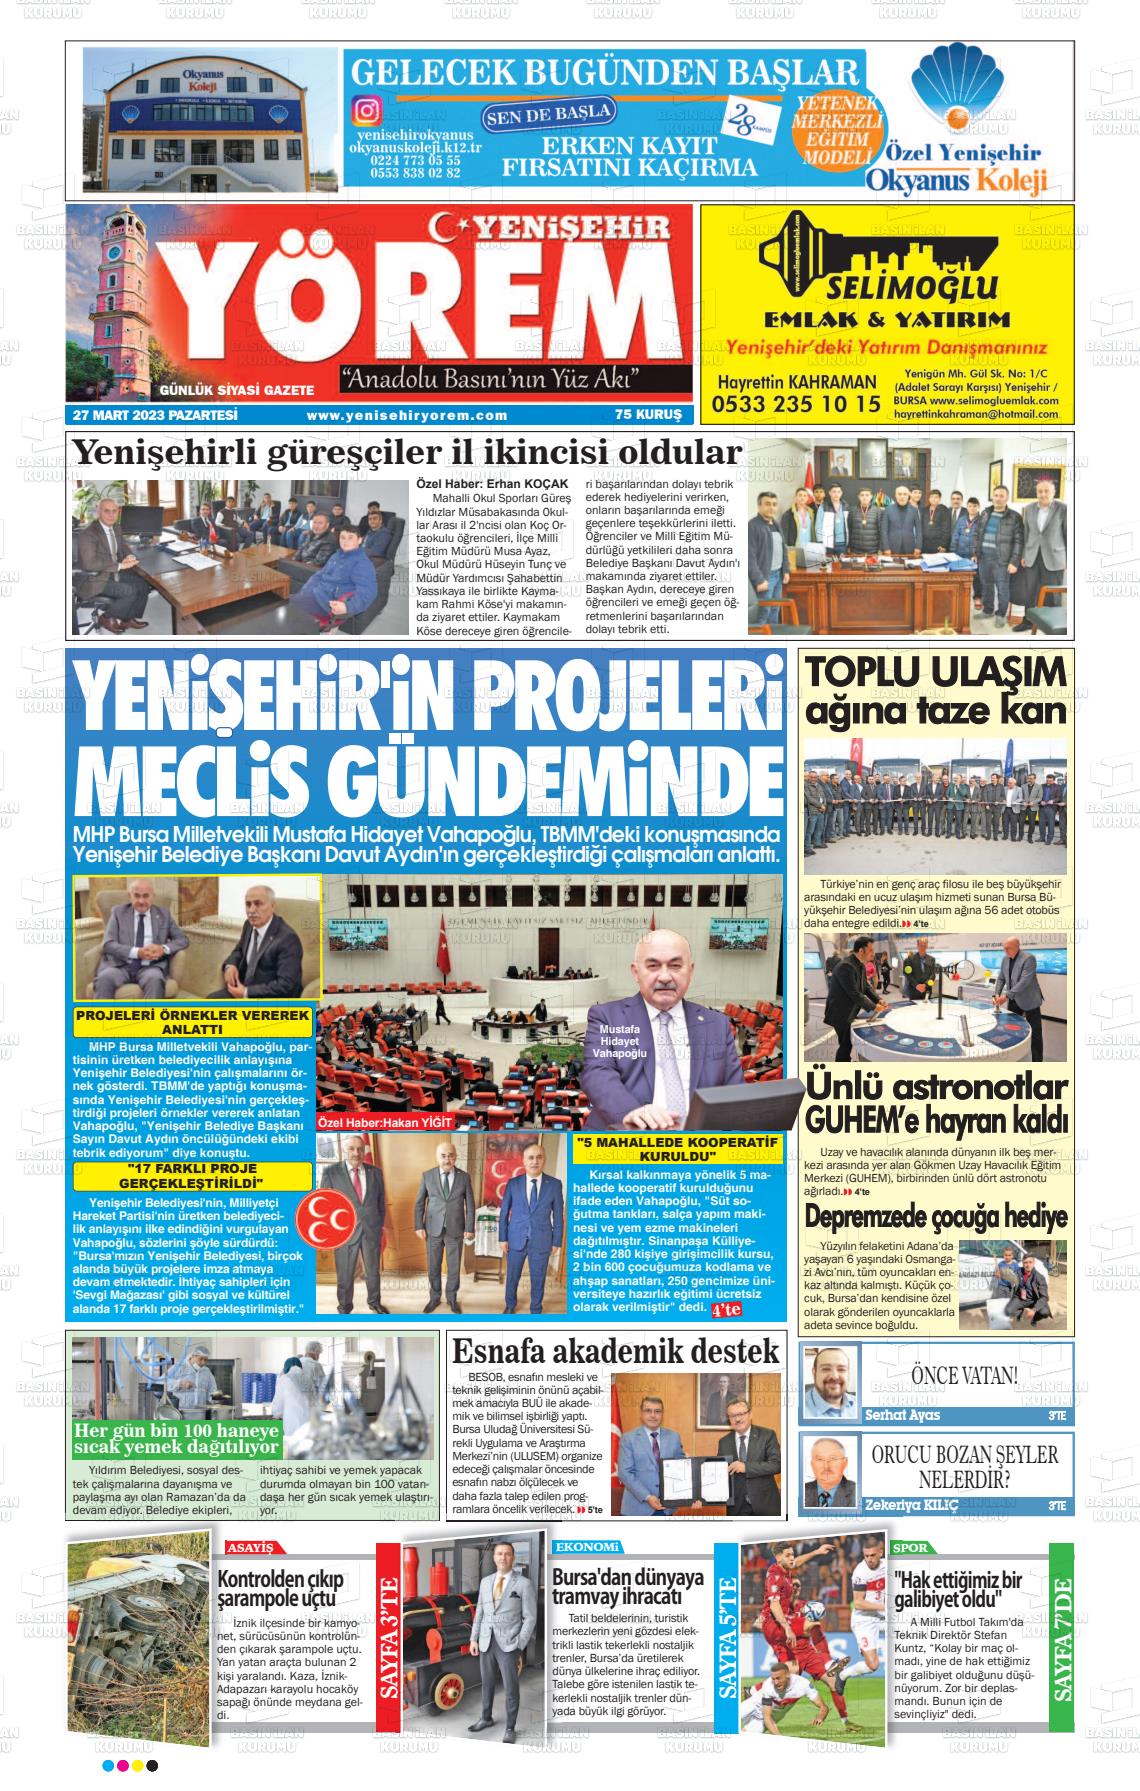 27 Mart 2023 Yenişehir Yörem Gazete Manşeti